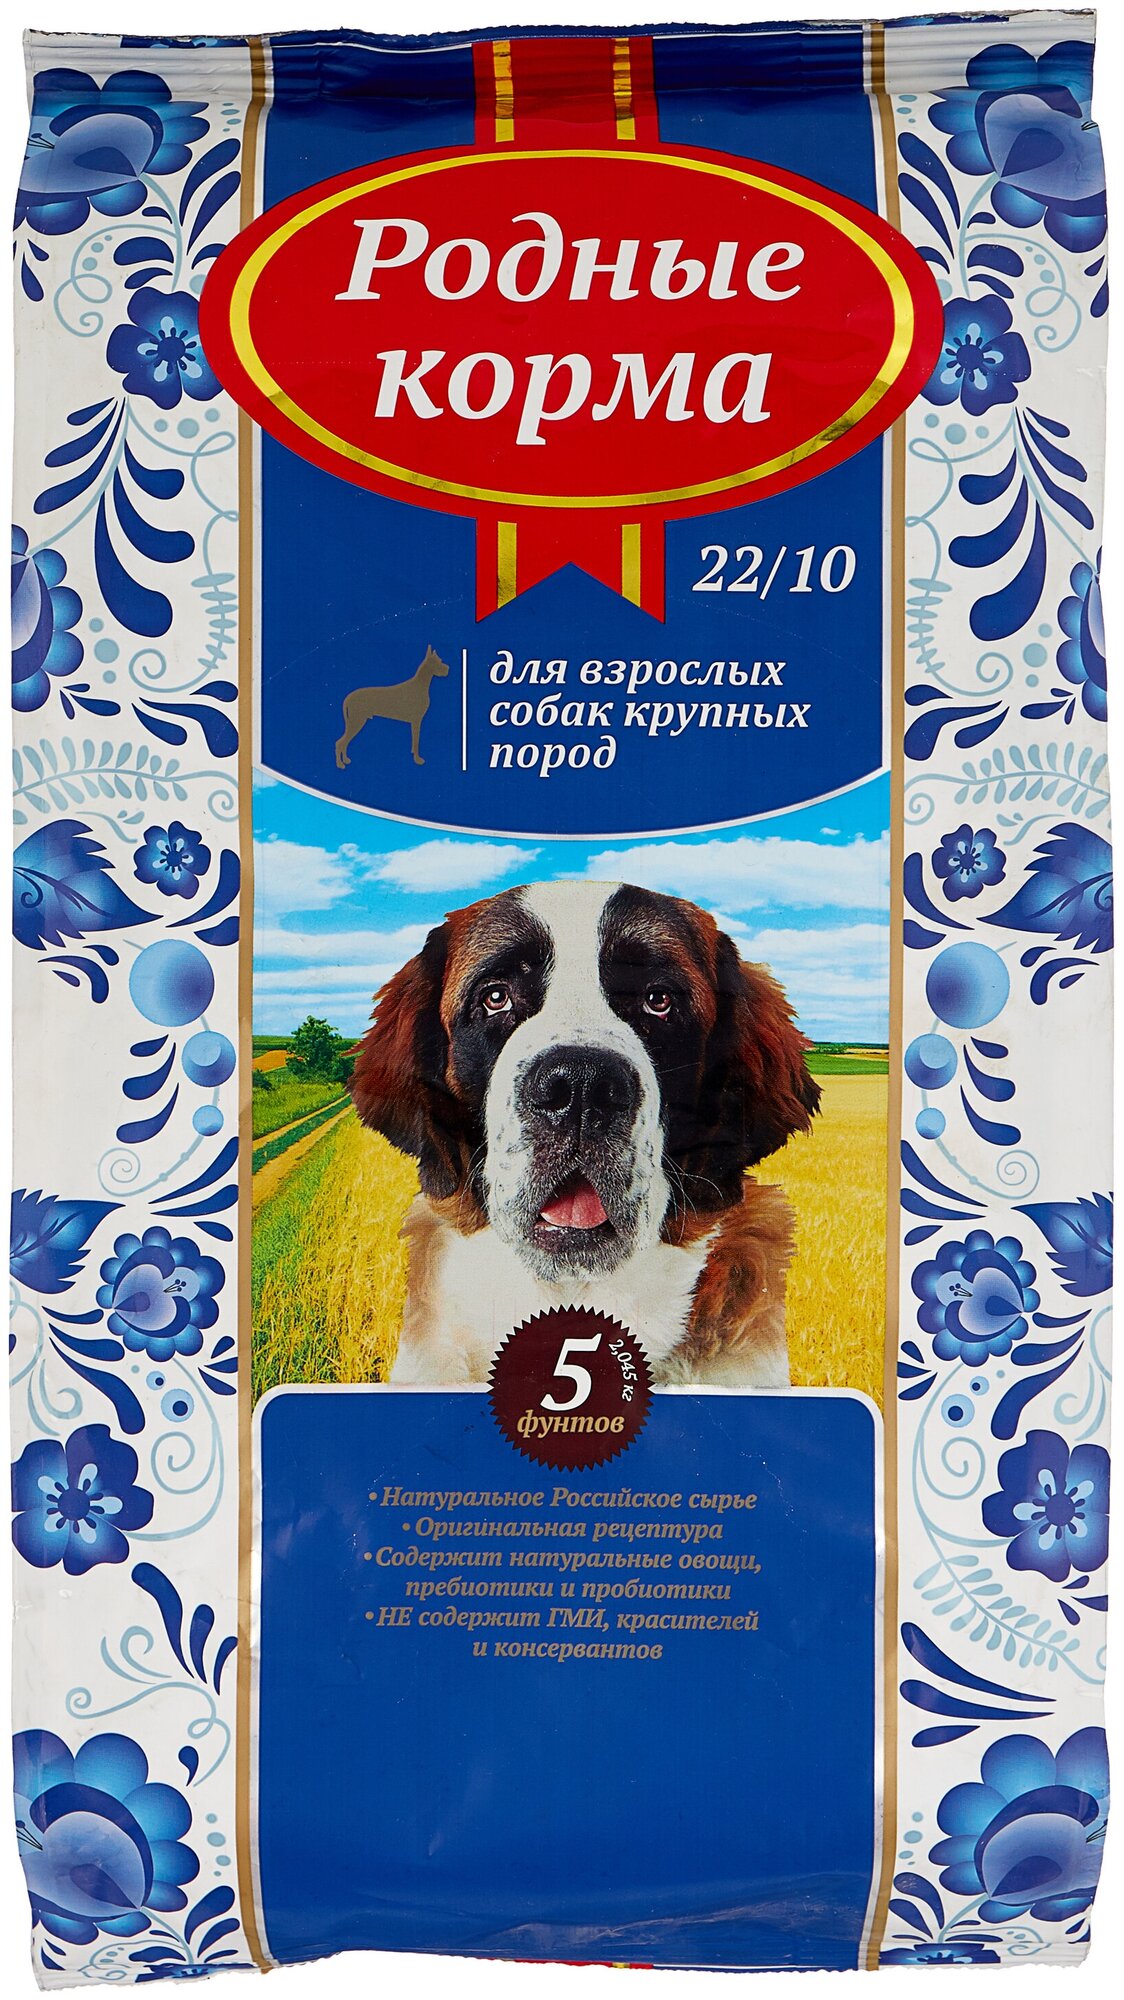 Родные корма сухой корм для взрослых собак крупных пород 22/10 5 русских фунтов (2,045 кг)